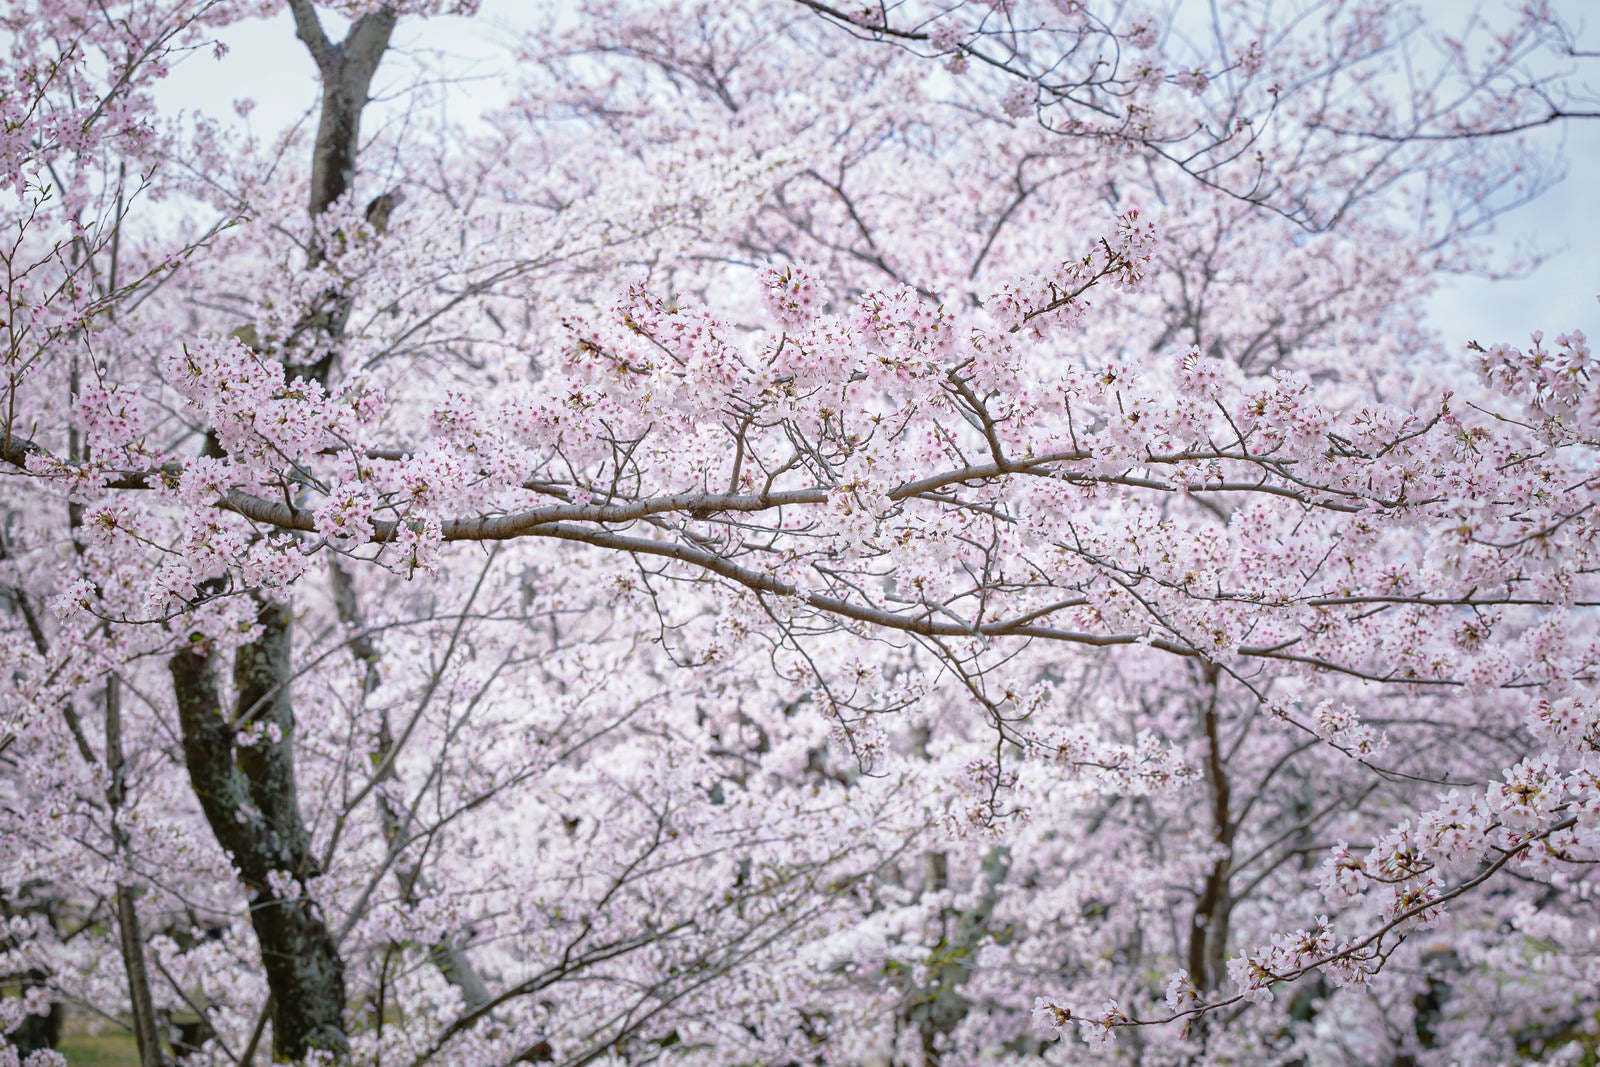 「細く長く伸びる満開の桜の枝」の写真